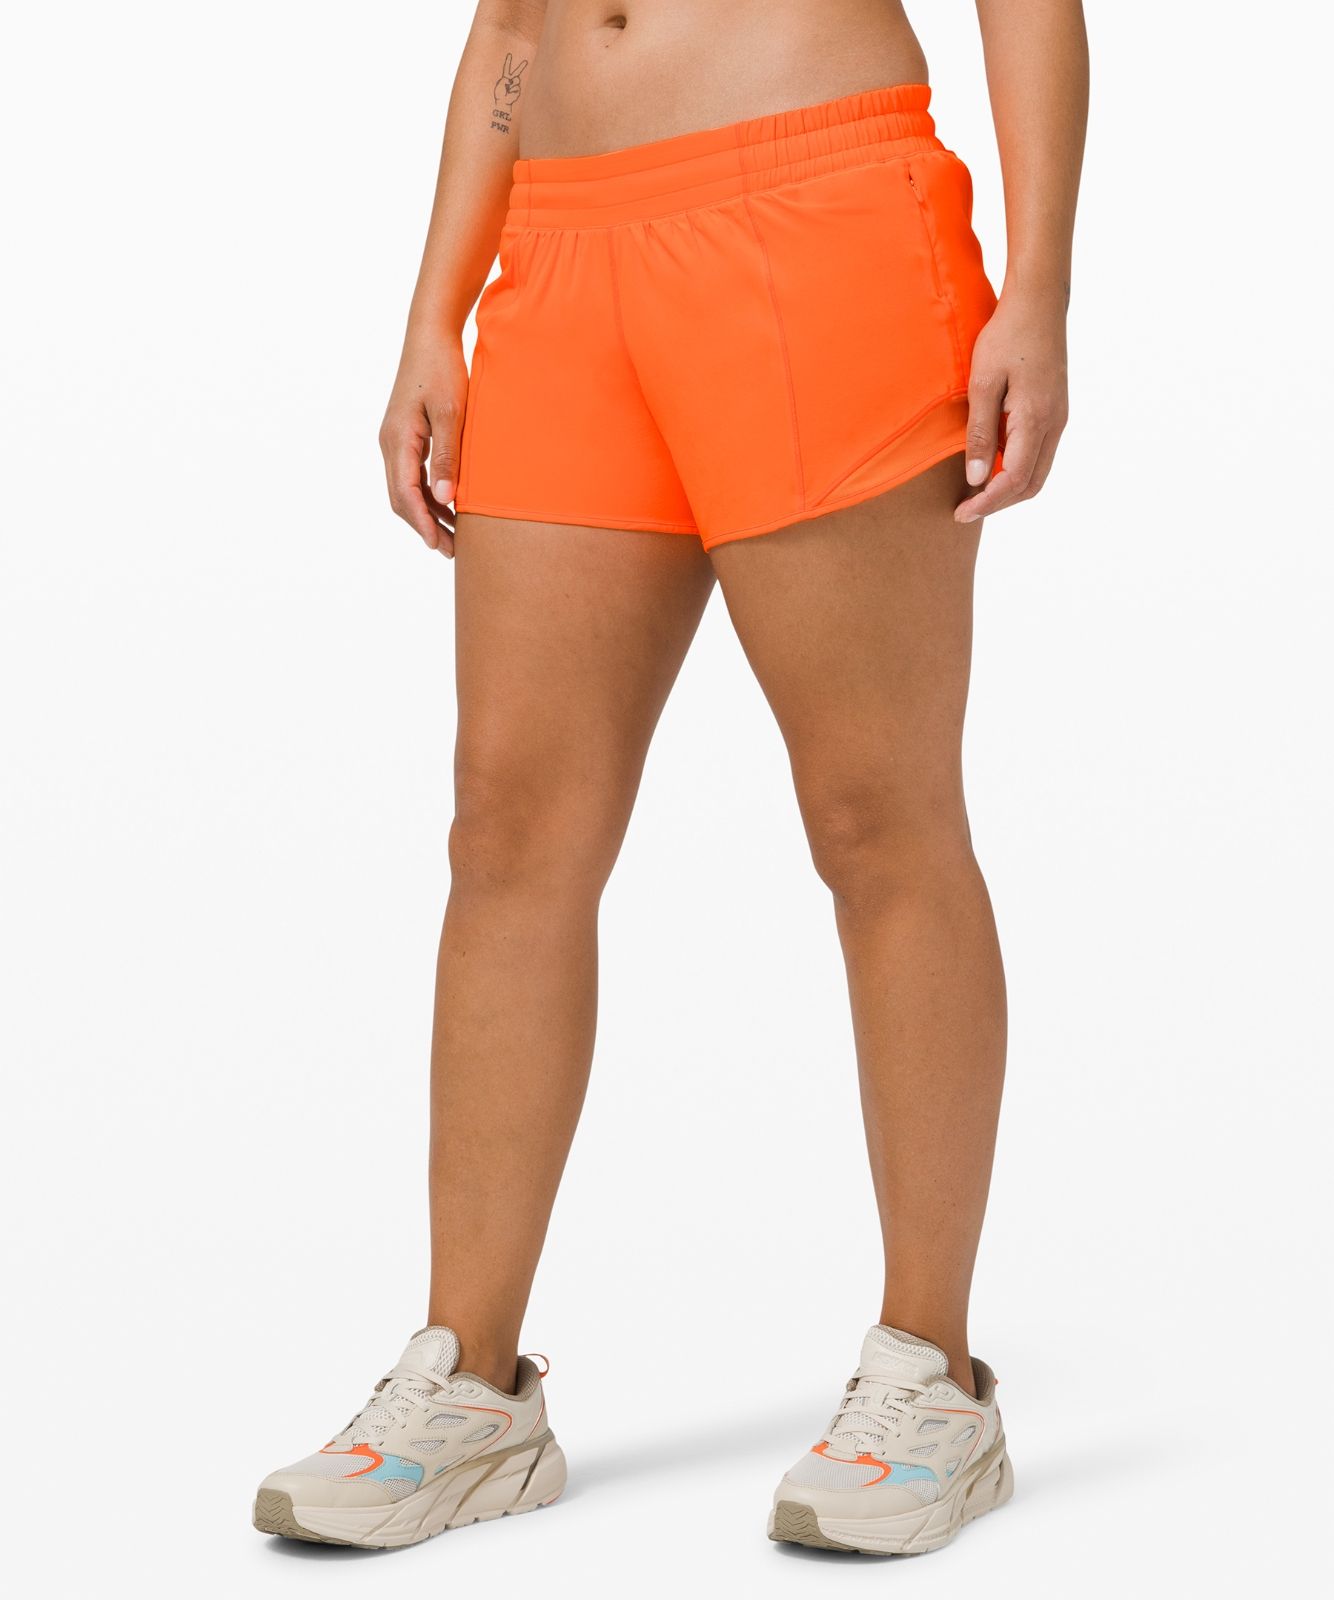 The best women's lululemon running shorts